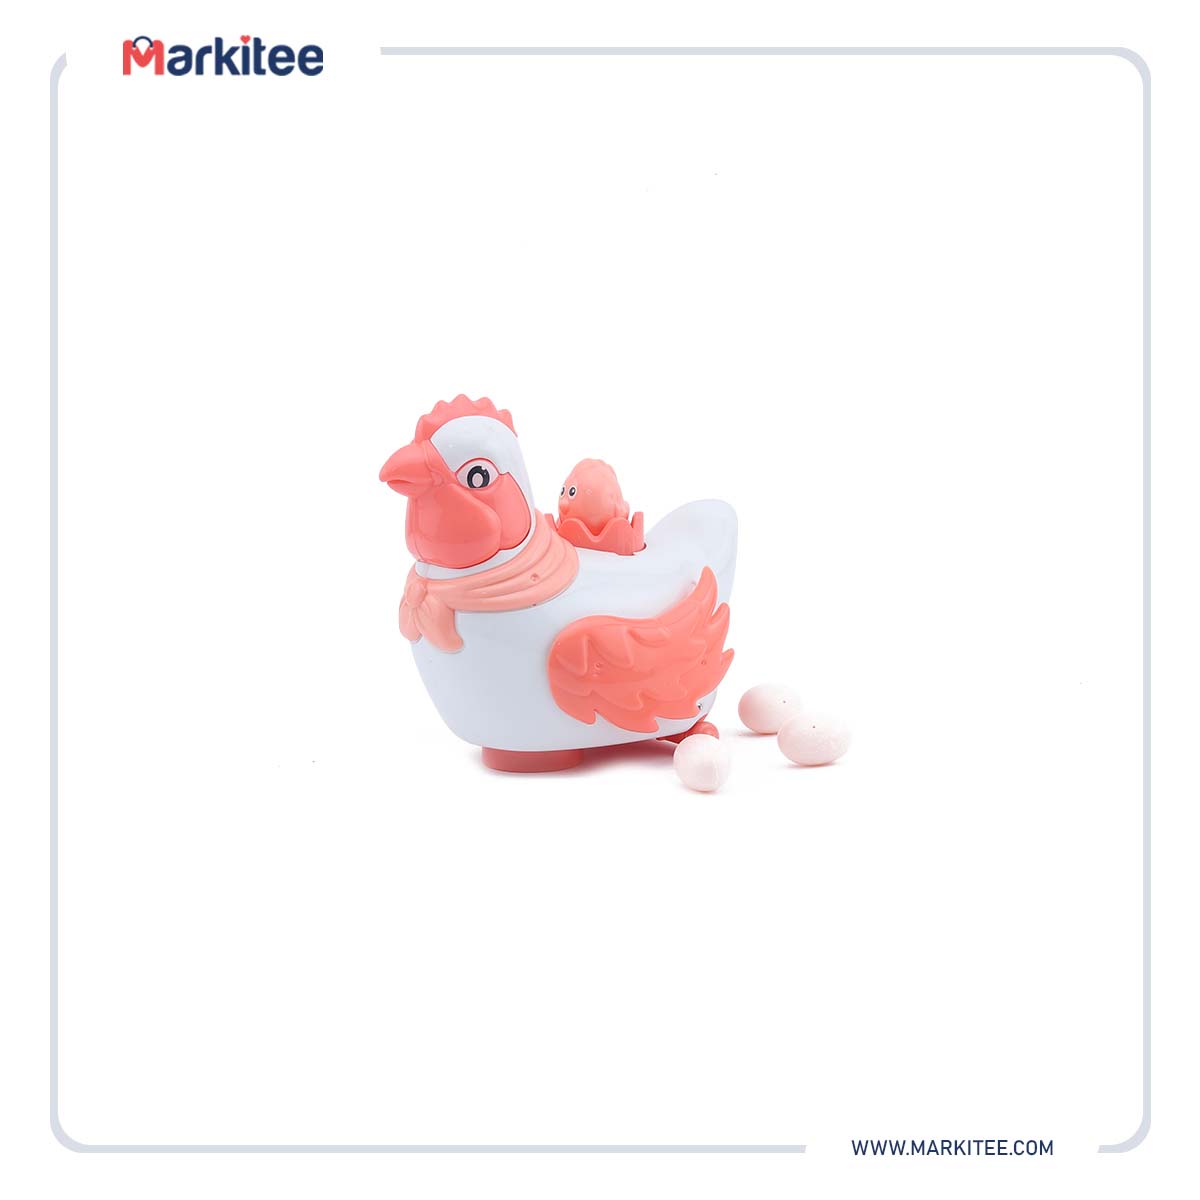 ماركيتي-markitee-20220627161350544_Markitee-Toys-X121(1)(1).jpg